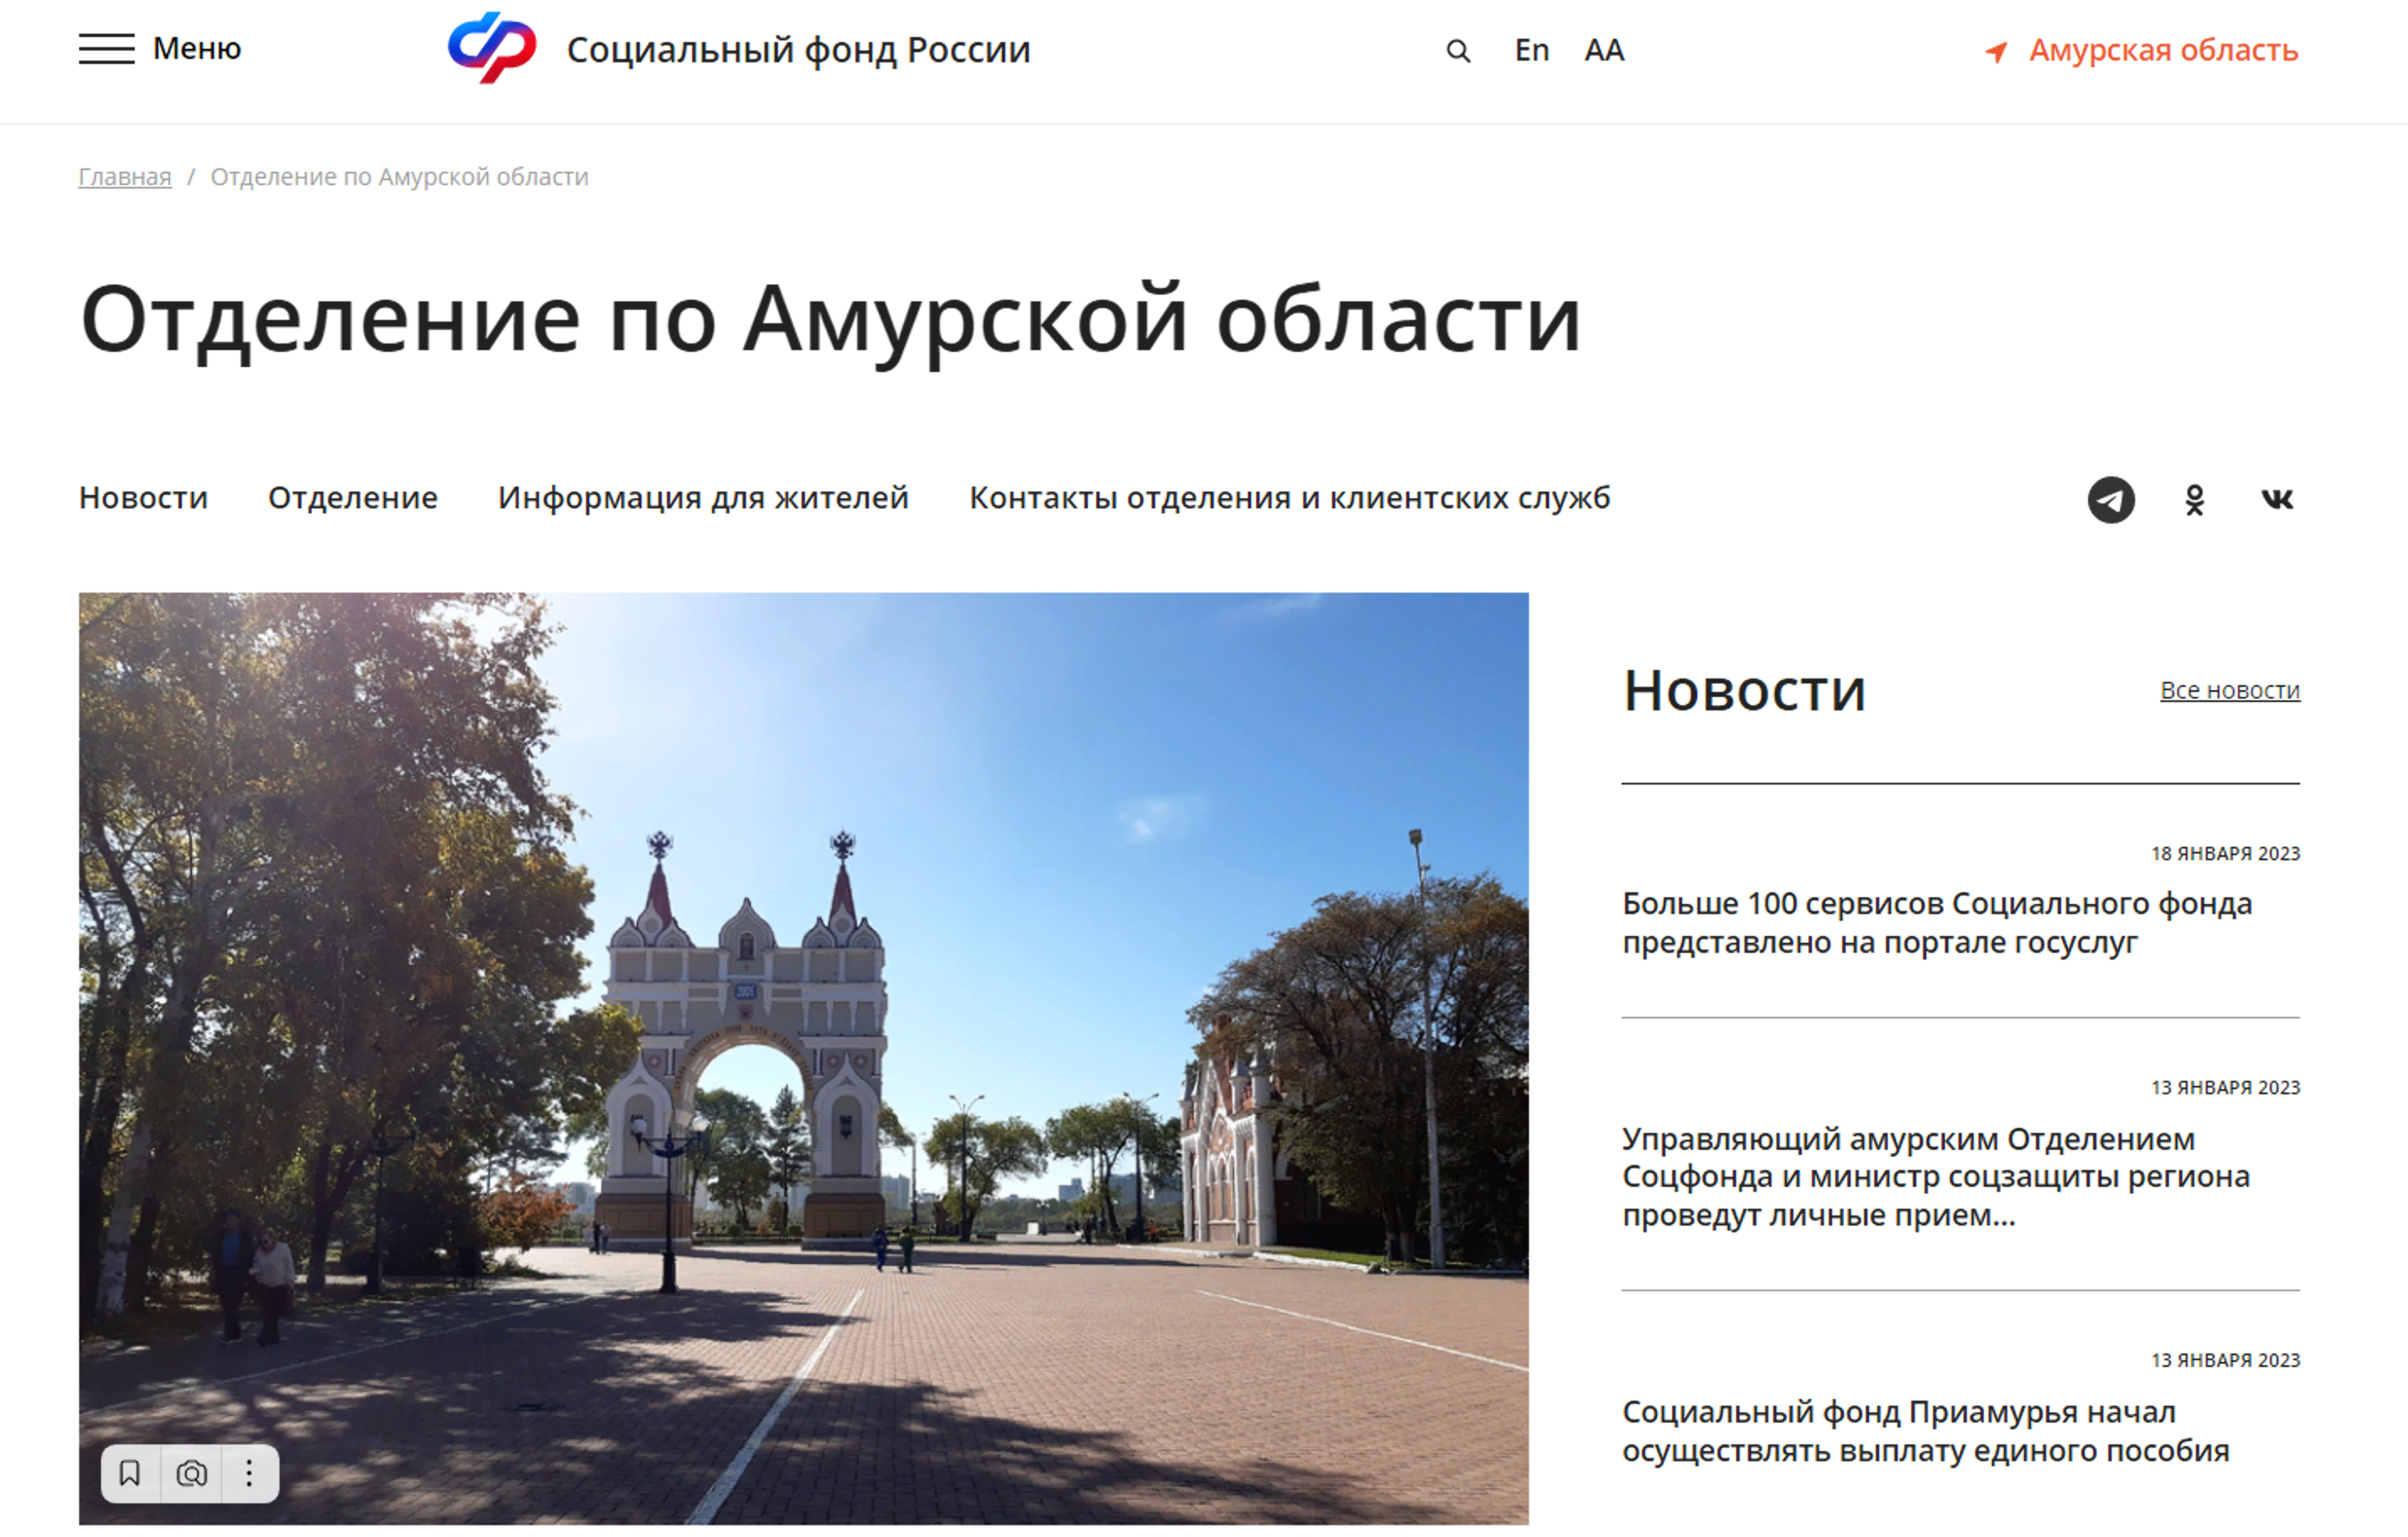 Сайт pfr gov ru